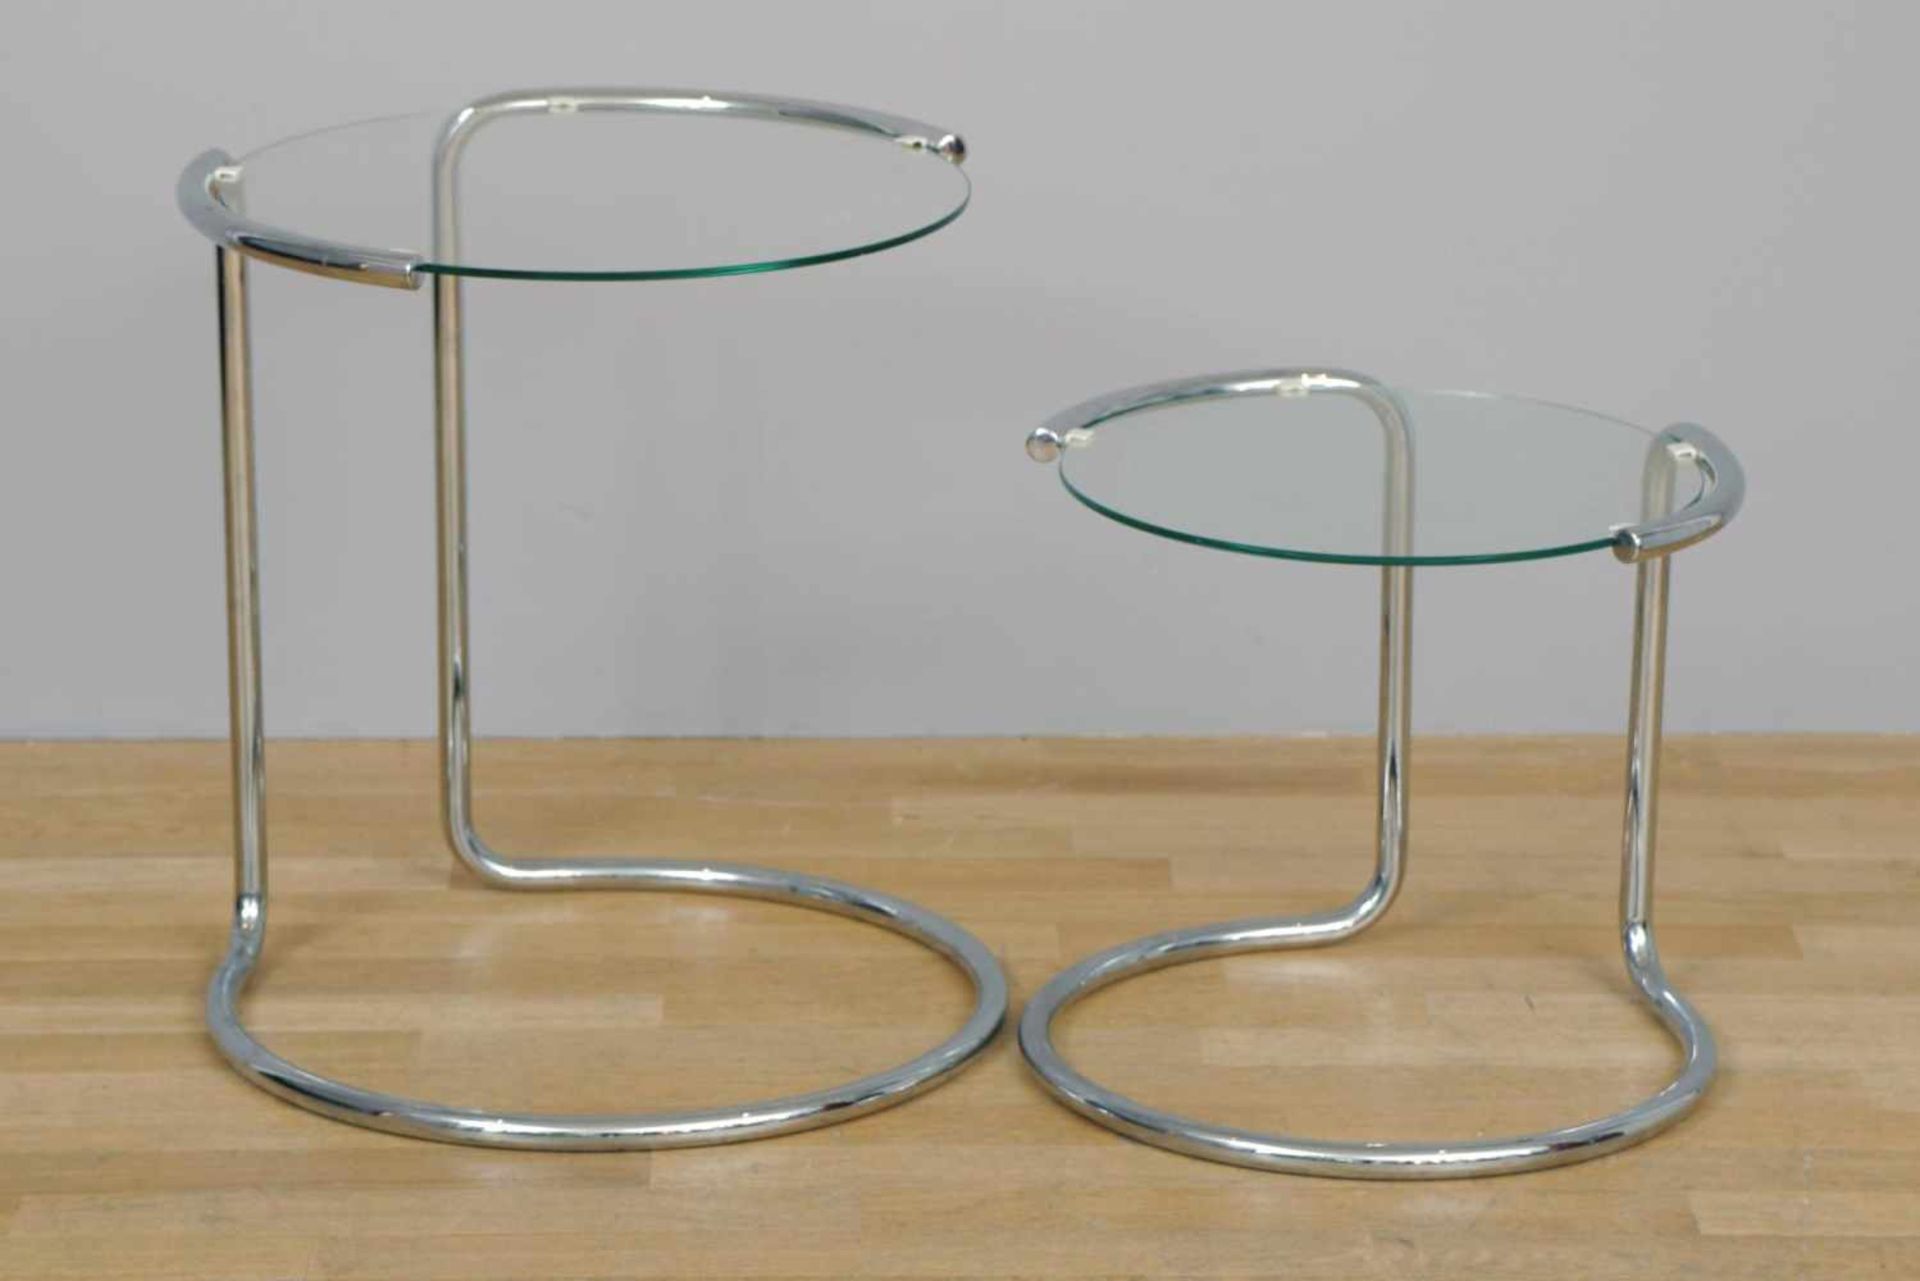 2-Satz-Tischum 1980, verchromtes Stahlrohr, runde Klarglas-Platten, unbekannter Hersteller/